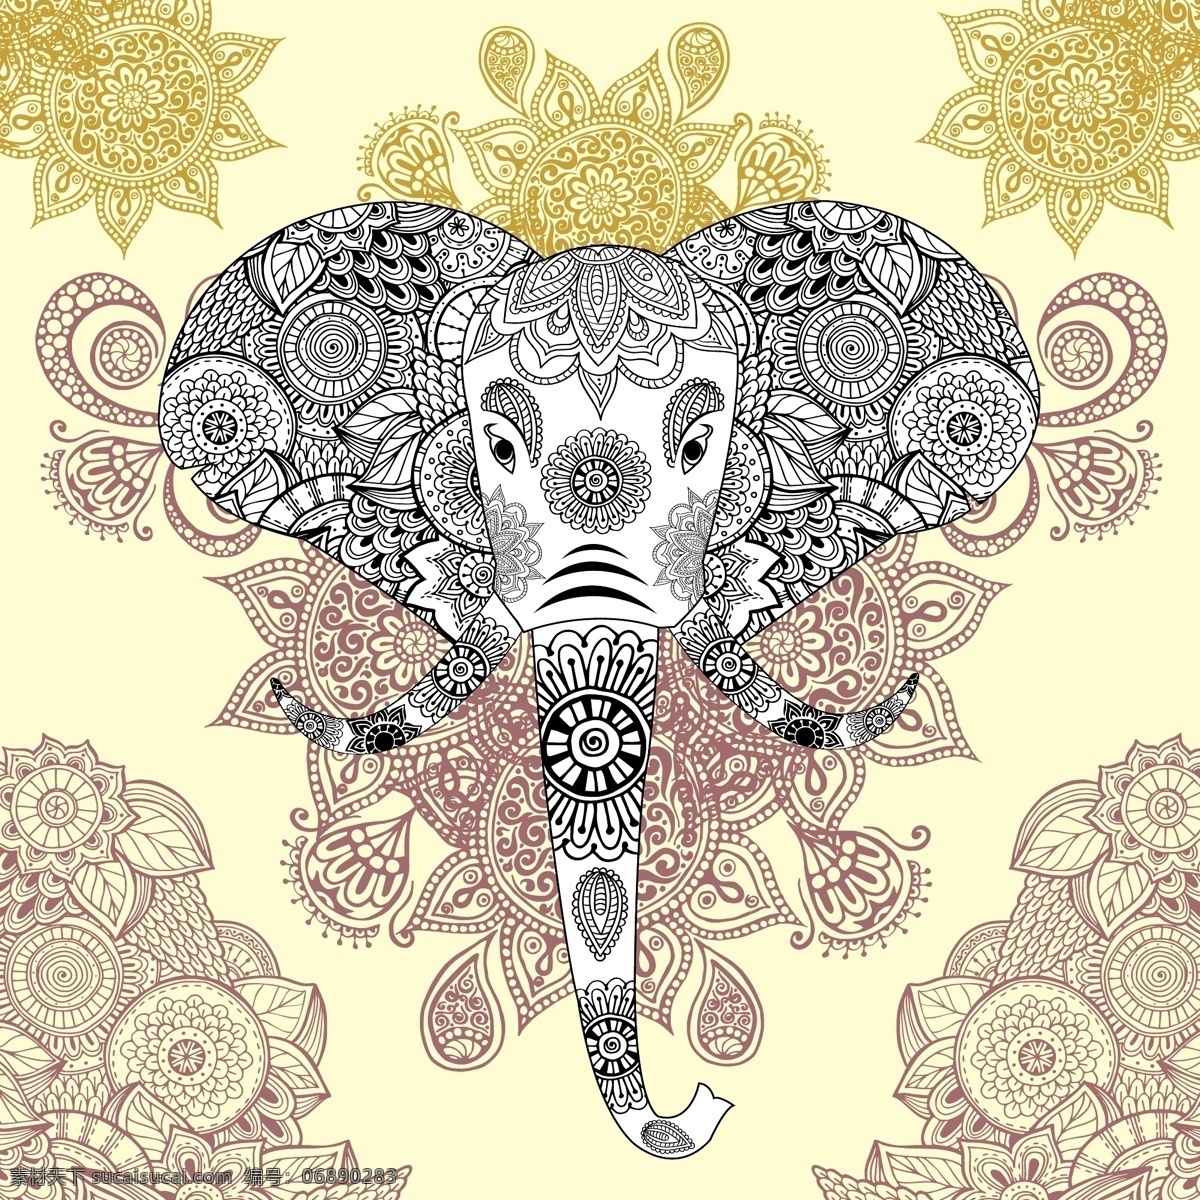 抽象大象花纹 大象 花纹 抽象 矢量 卡通动物 卡通设计